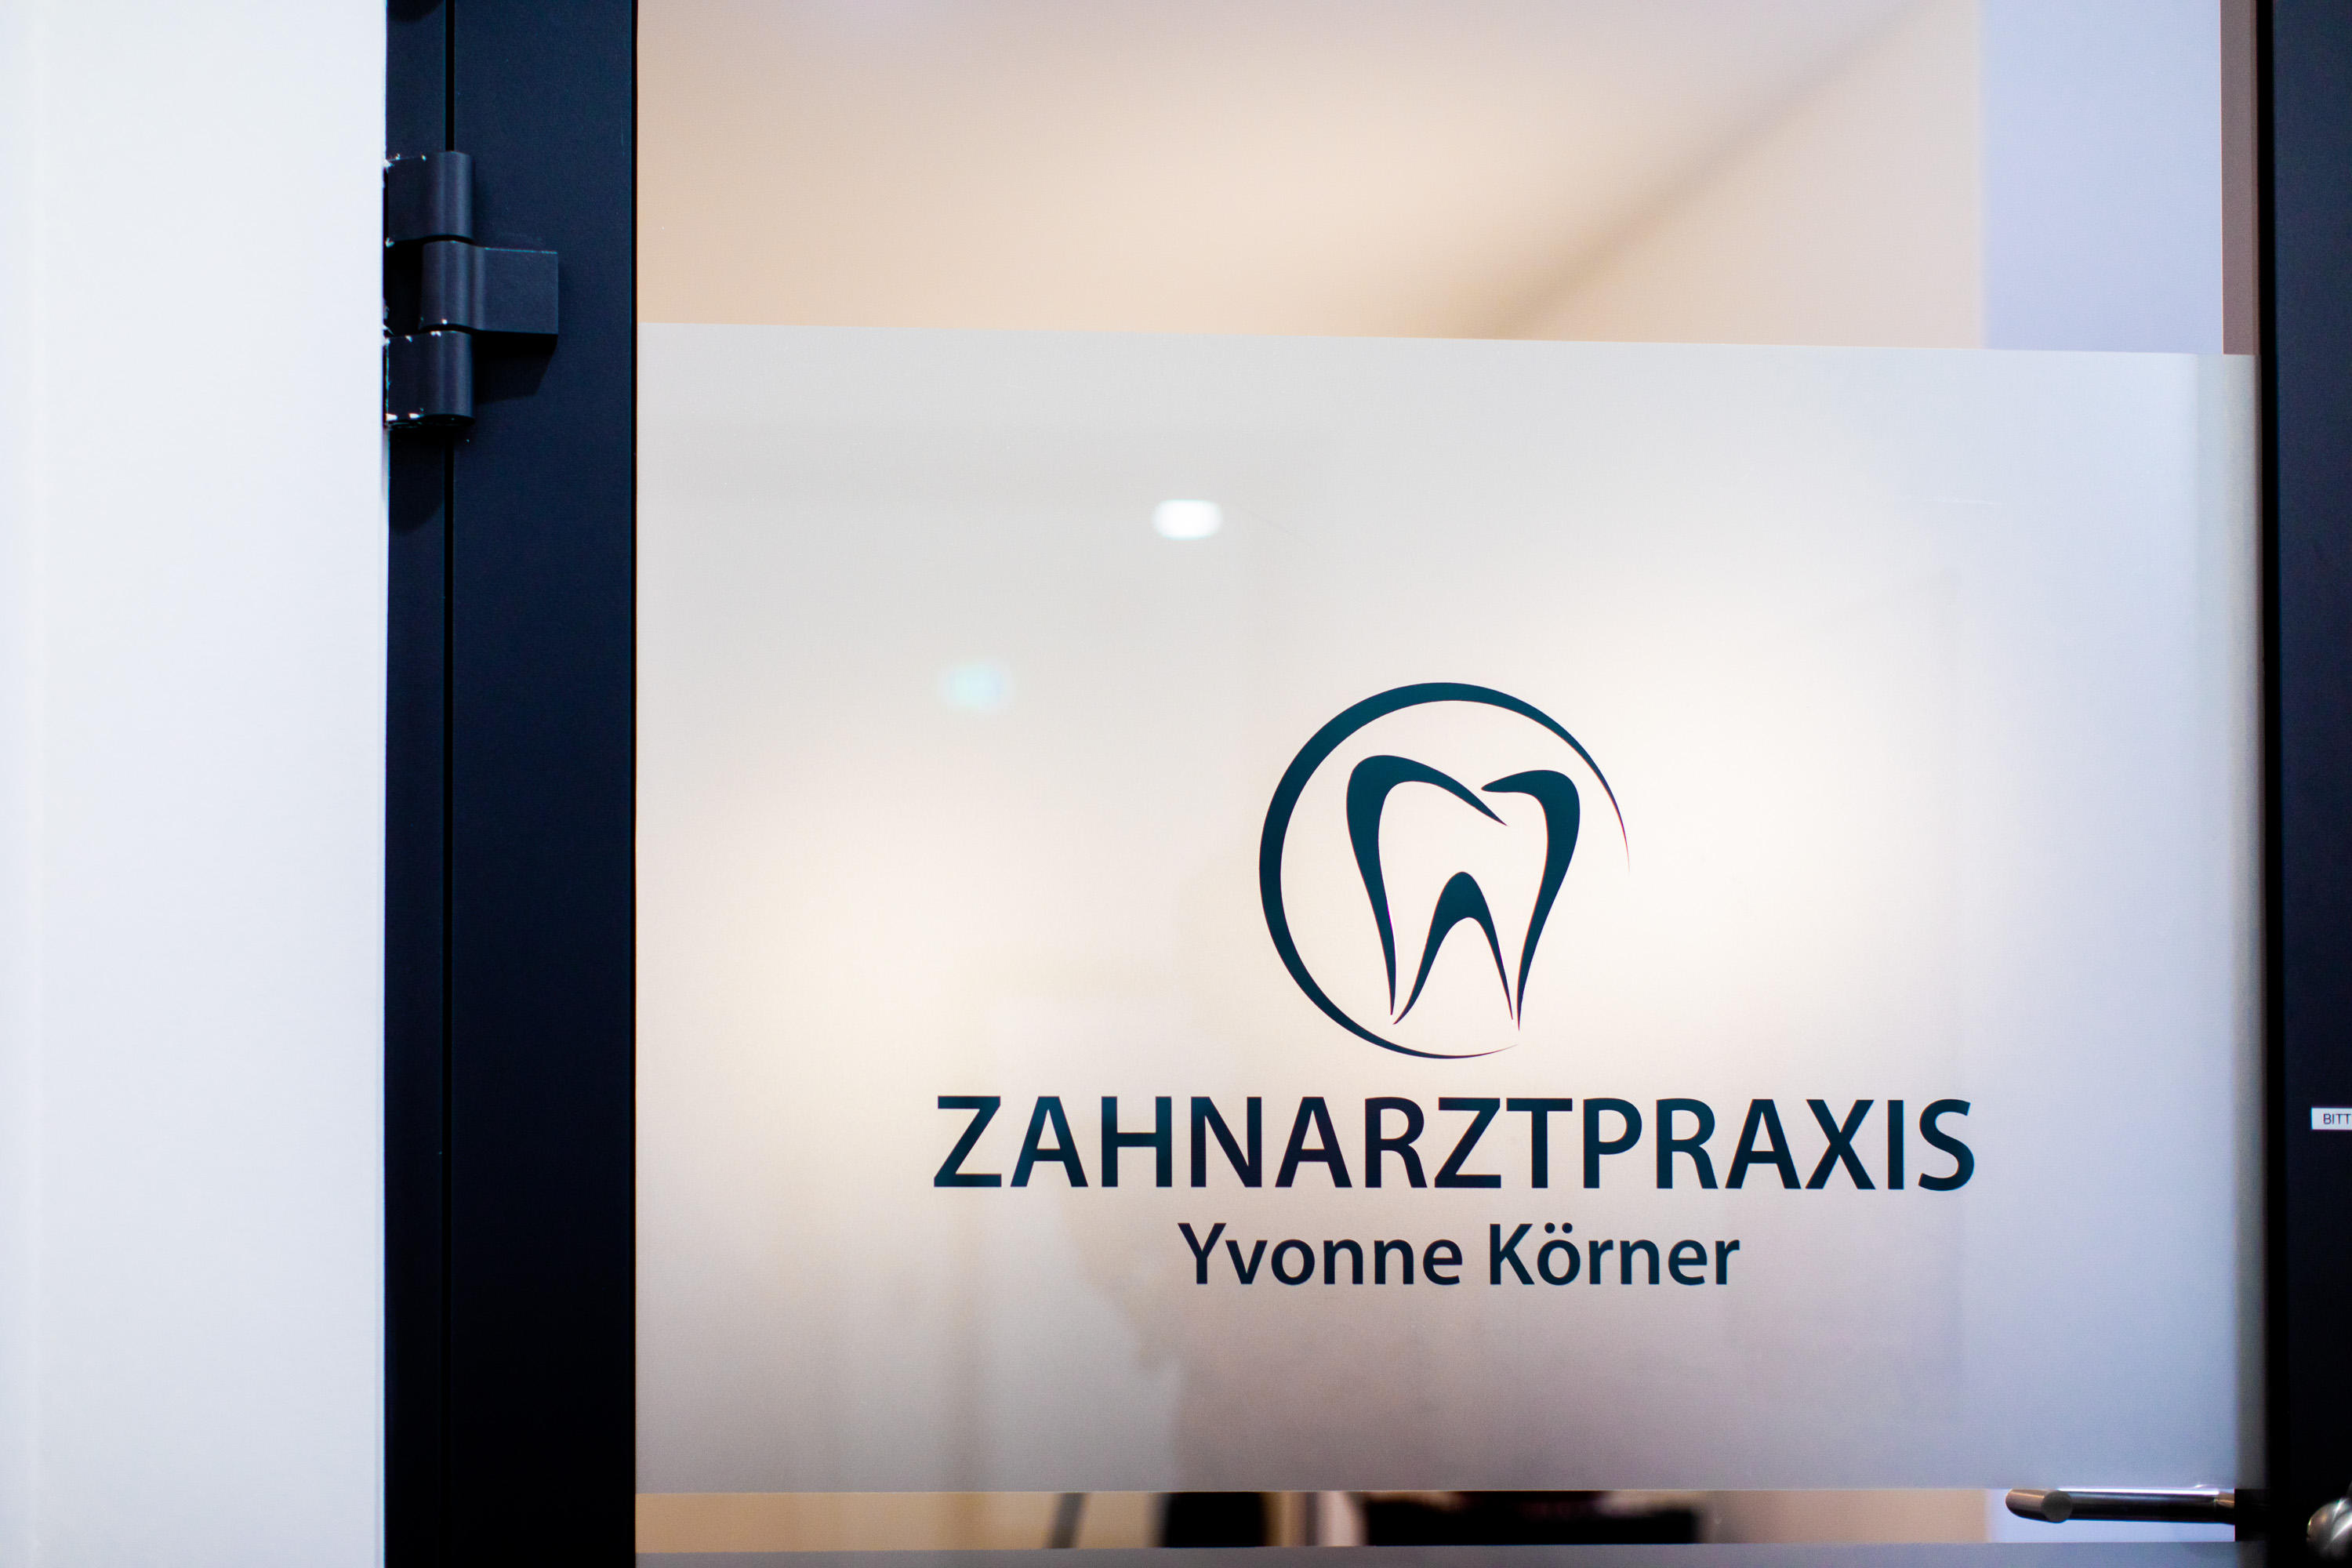 Zahnarztpraxis Yvonne Körner - Zahnarzt Leipzig Zentrum, Ritterstraße 23-25 in Leipzig